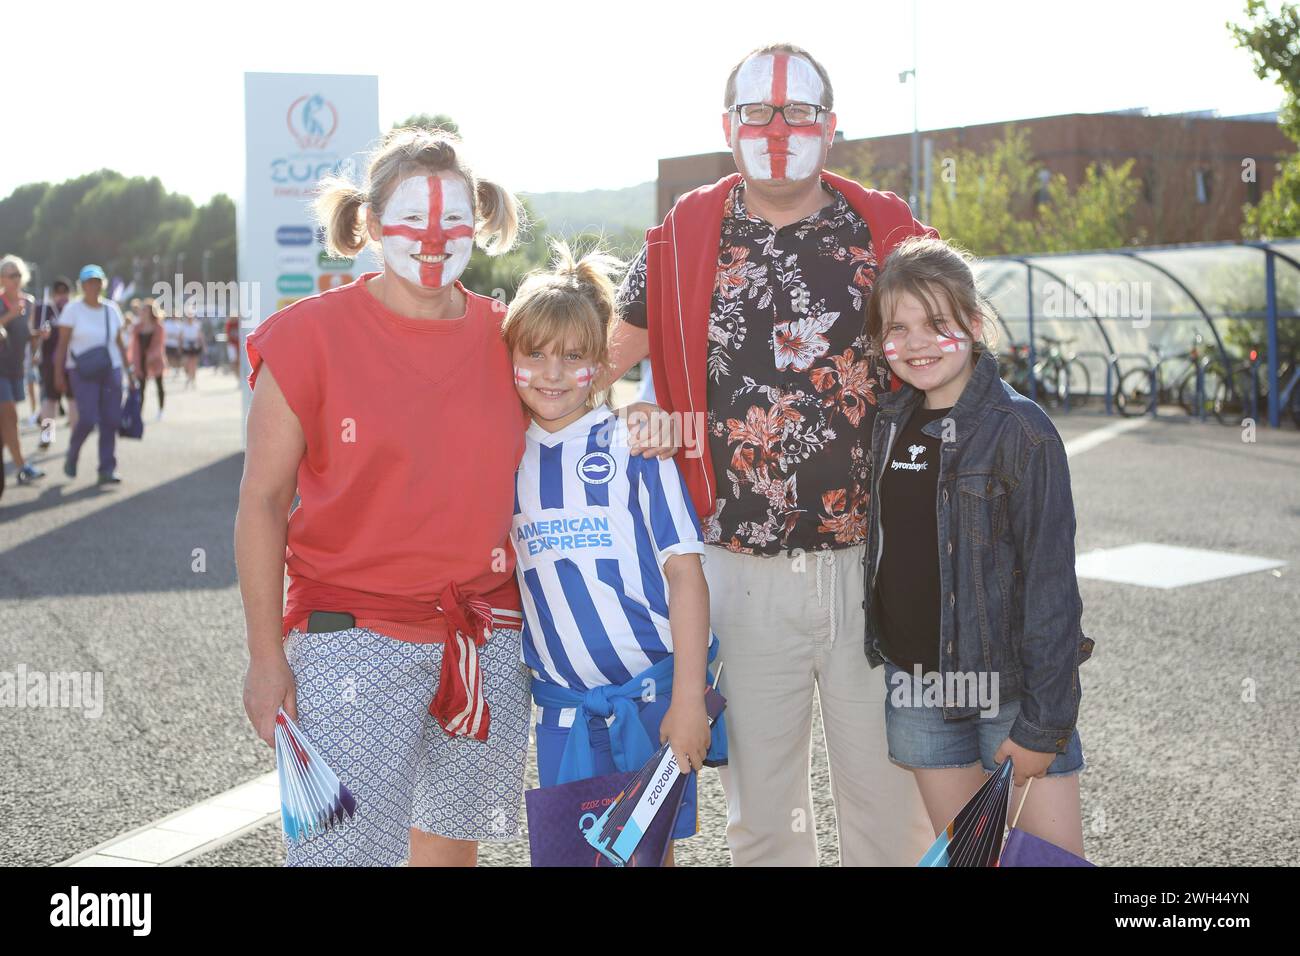 Souriant famille de fans aux visages peints Angleterre - Espagne UEFA Womens Euro Brighton Community Stadium (stade Amex) 20 juillet 2022 Banque D'Images